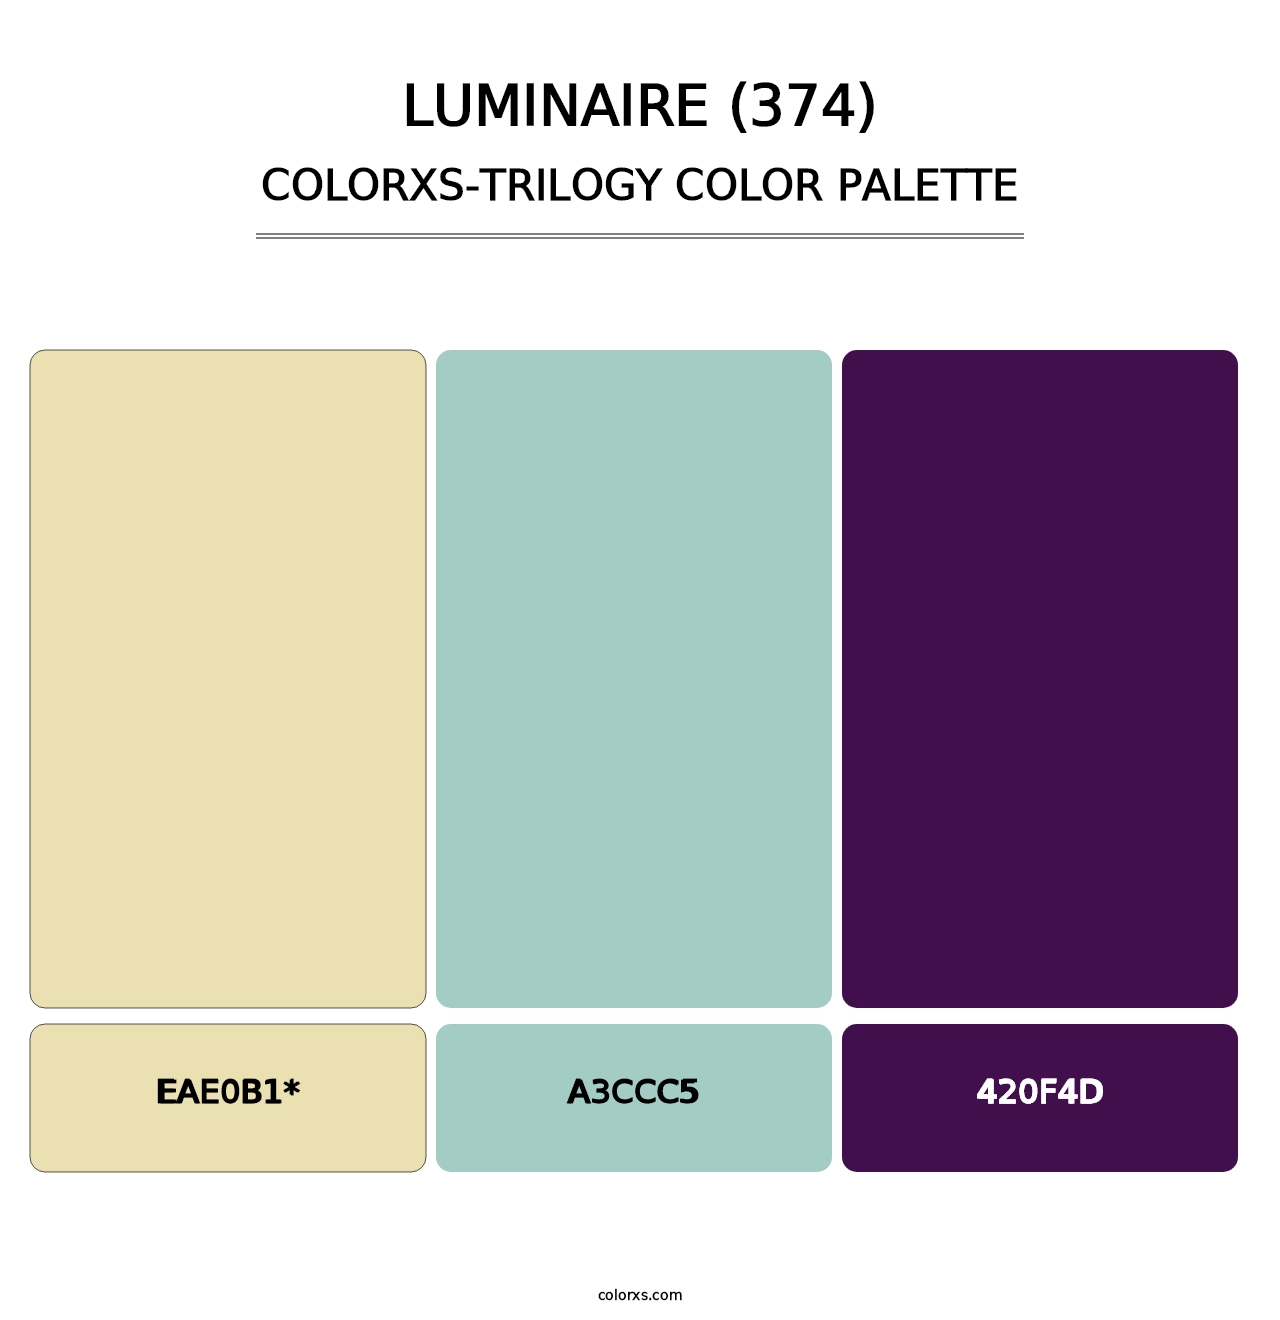 Luminaire (374) - Colorxs Trilogy Palette